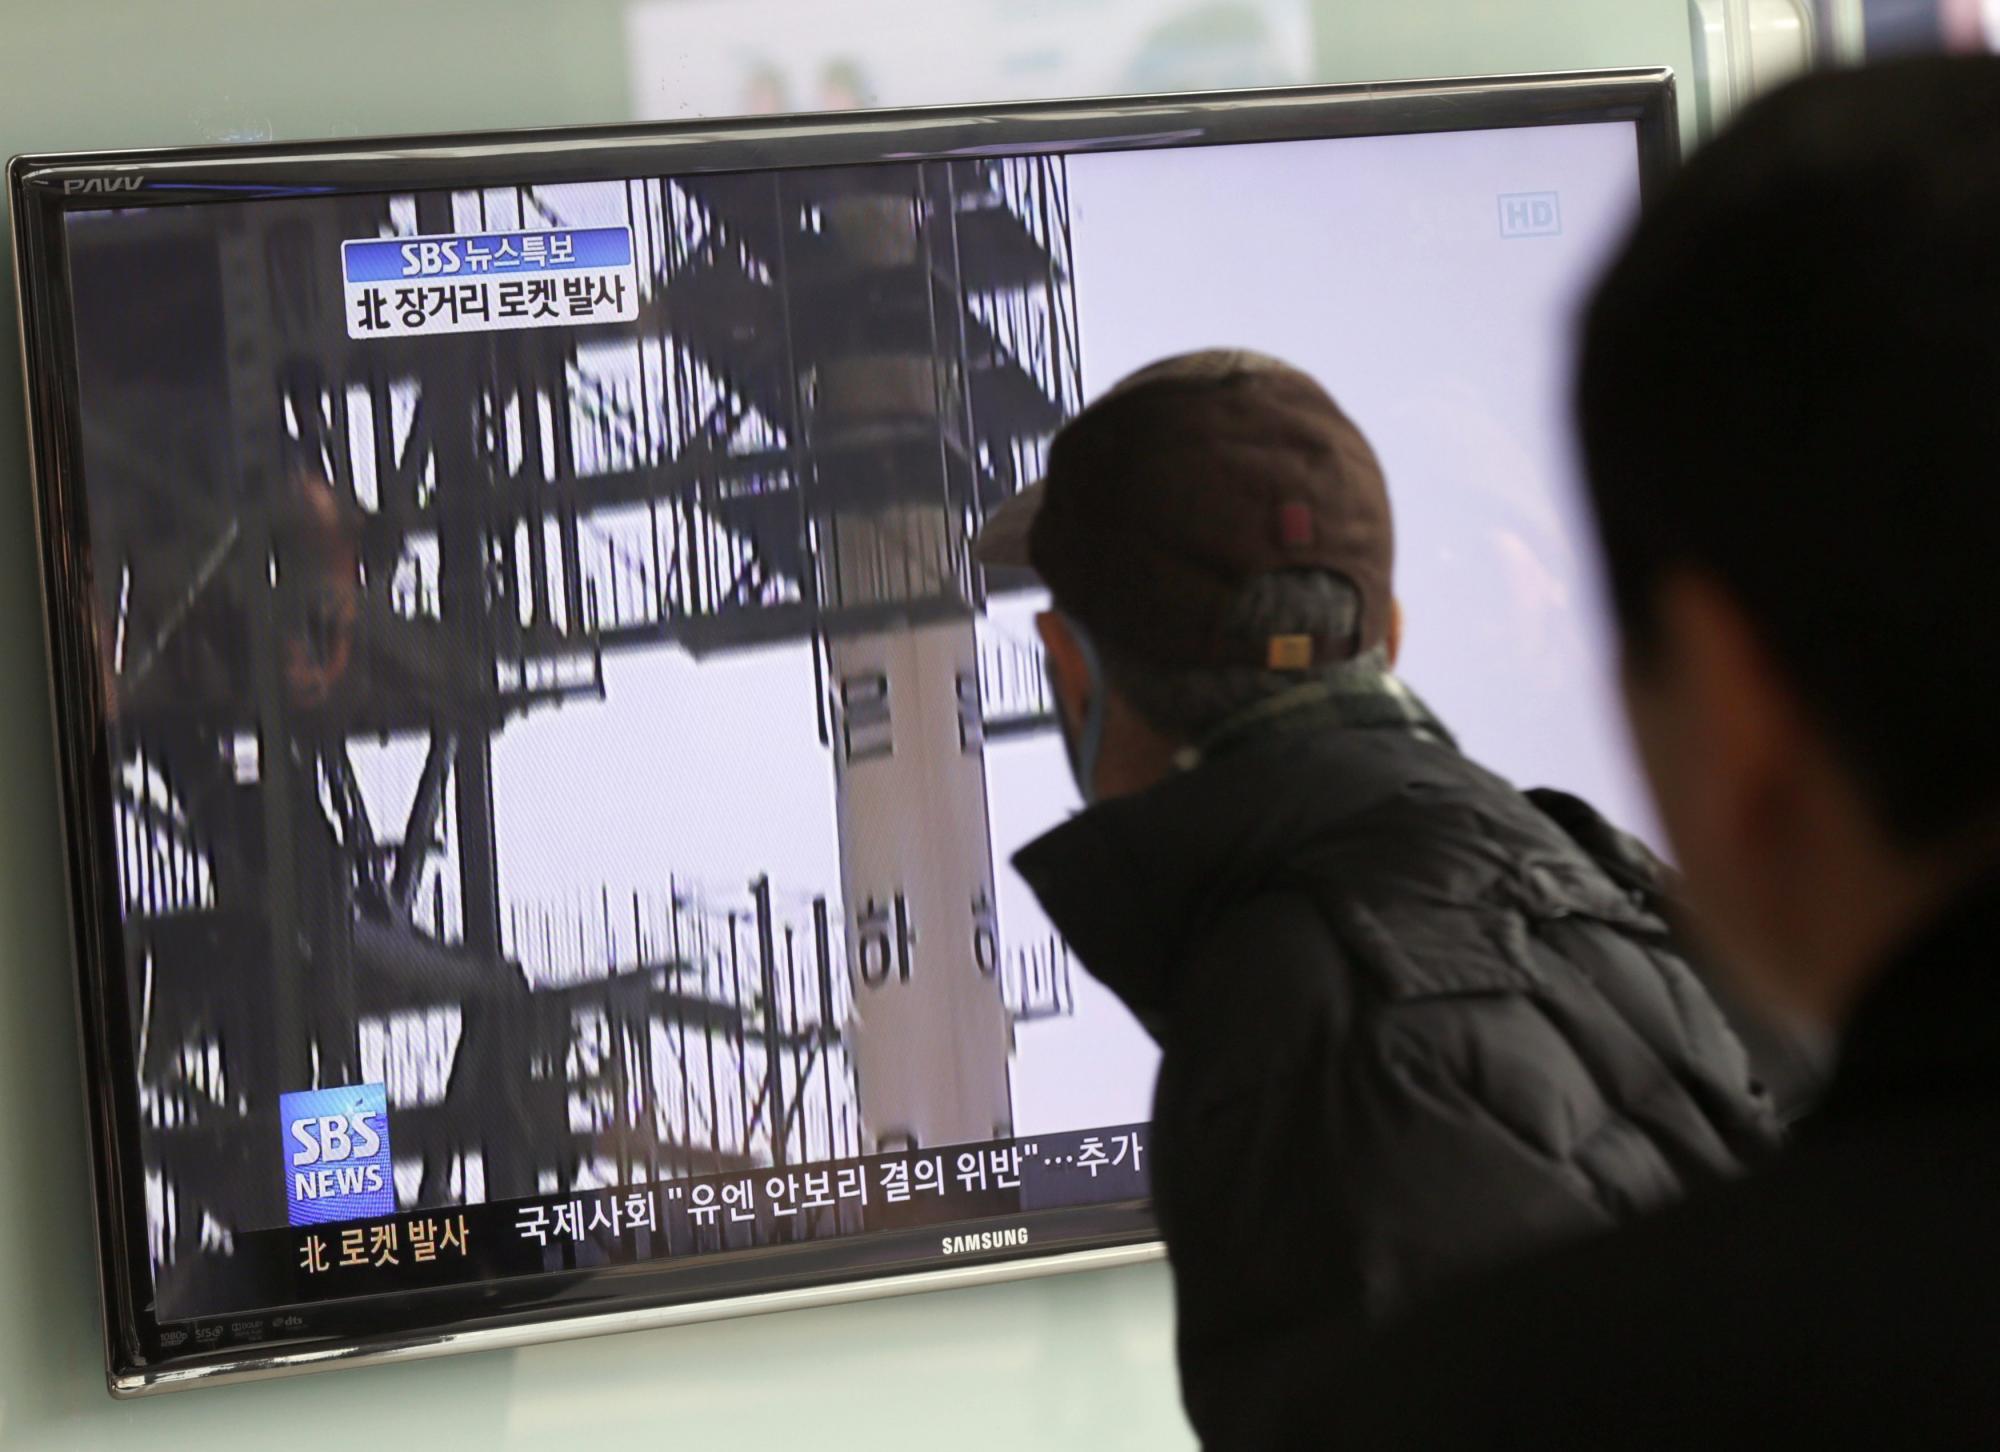 朝鲜宣布成功发射“光明星3号”卫星 韩日美等谴责中俄呼吁冷静